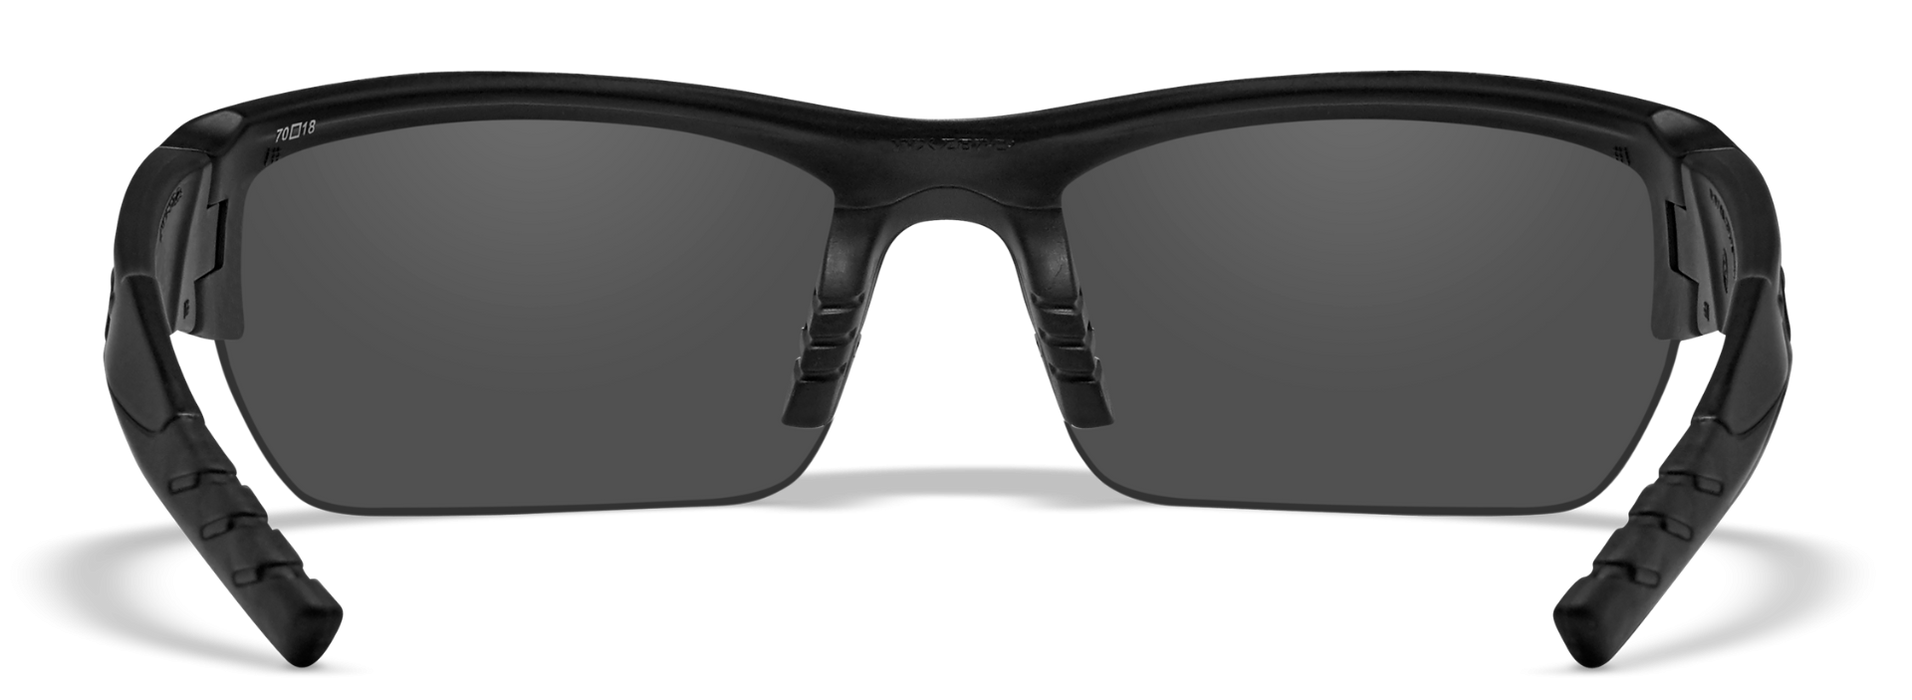 Wiley X WX Valor Matte Black Polycarbonate Sunglasses